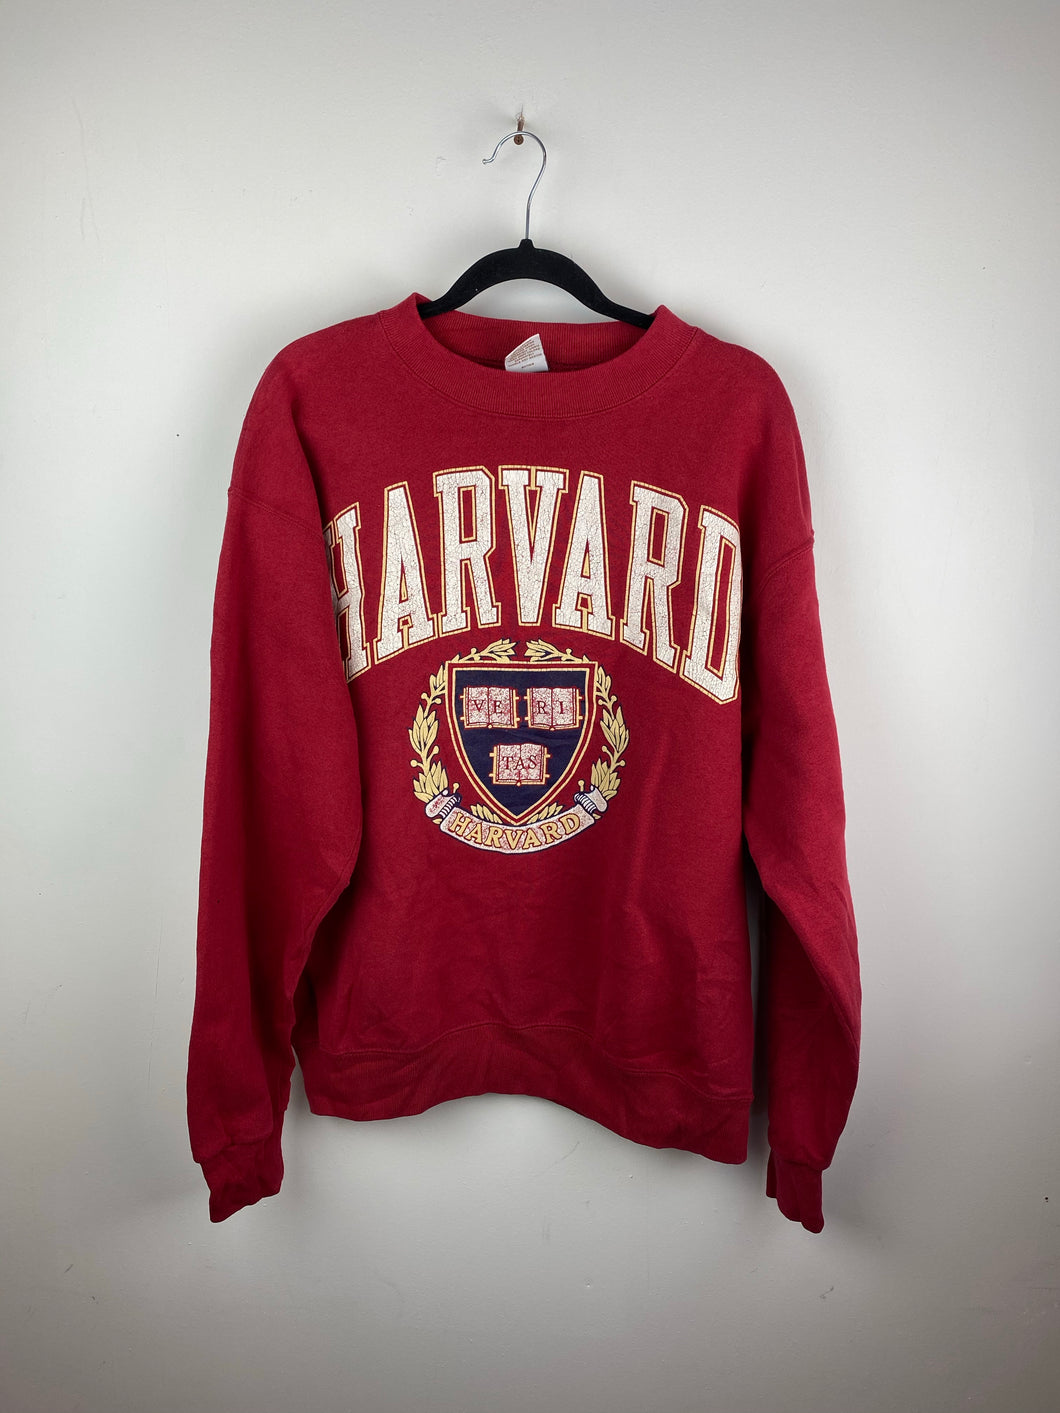 90s Harvard crewneck